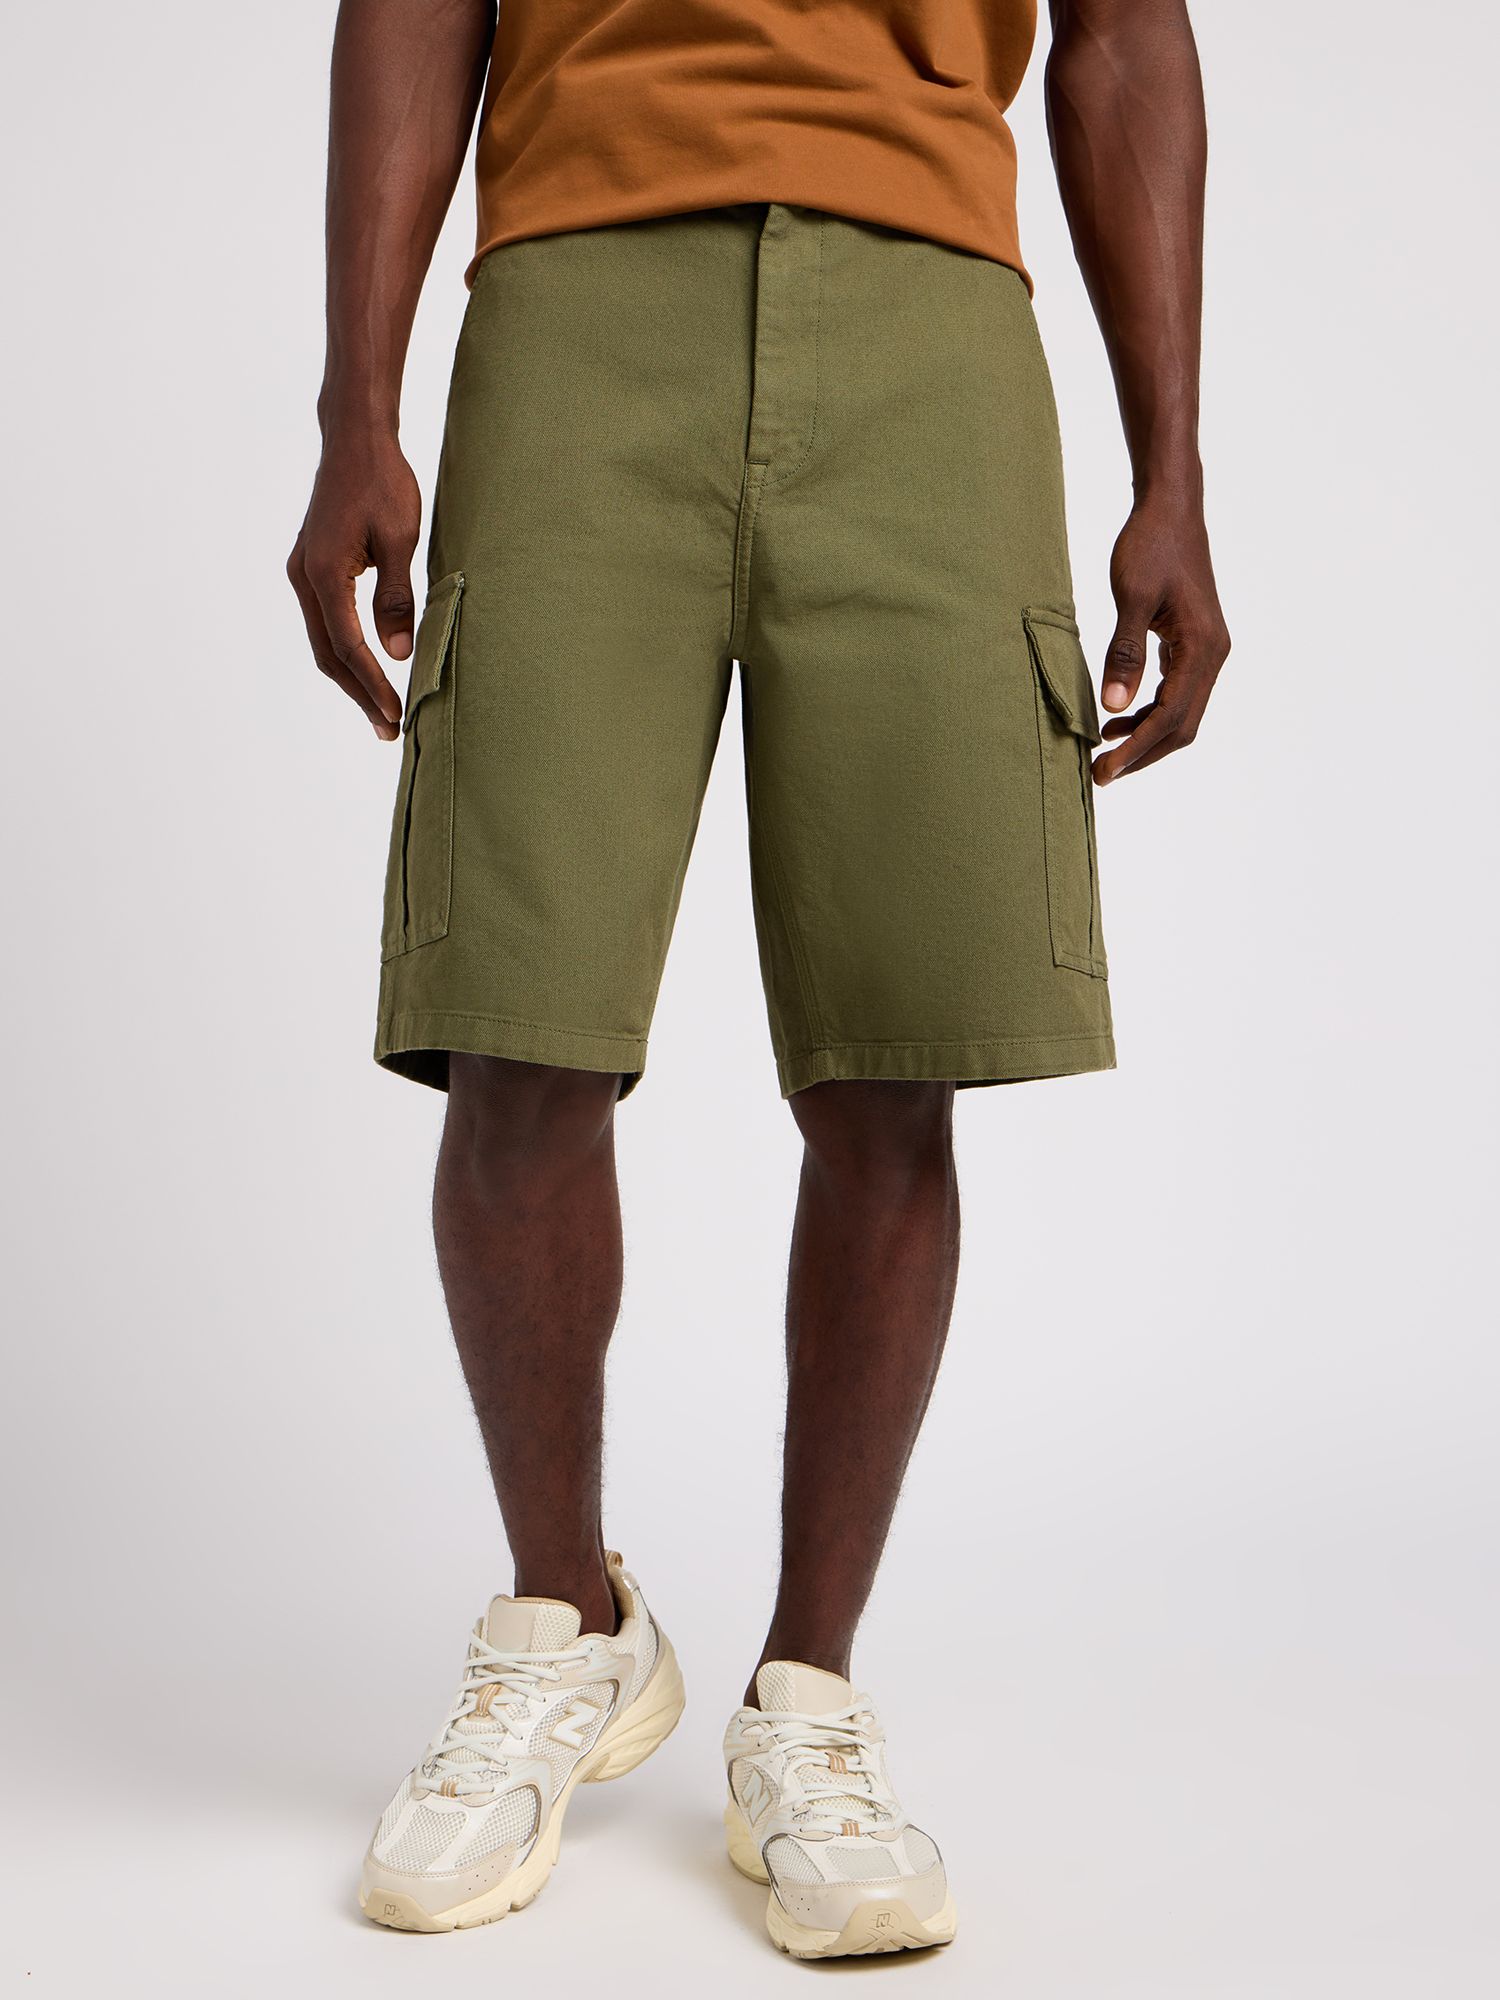 Lee Regular Fit Cargo Shorts, Olive, 30R